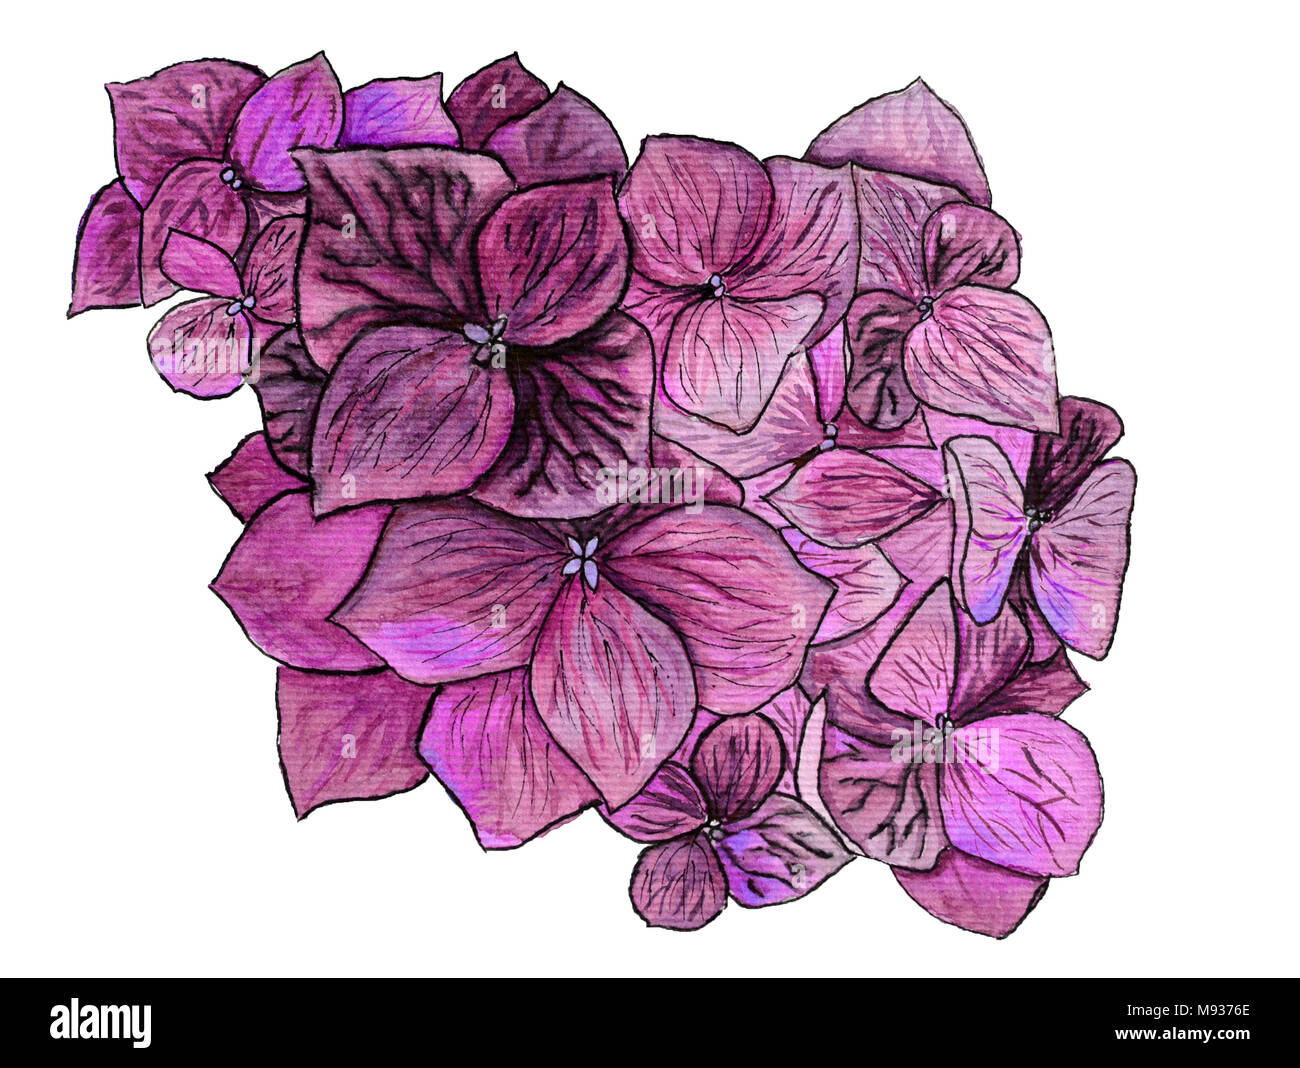 Hortensia violet aquarelle de fleurs sur fond blanc Banque D'Images